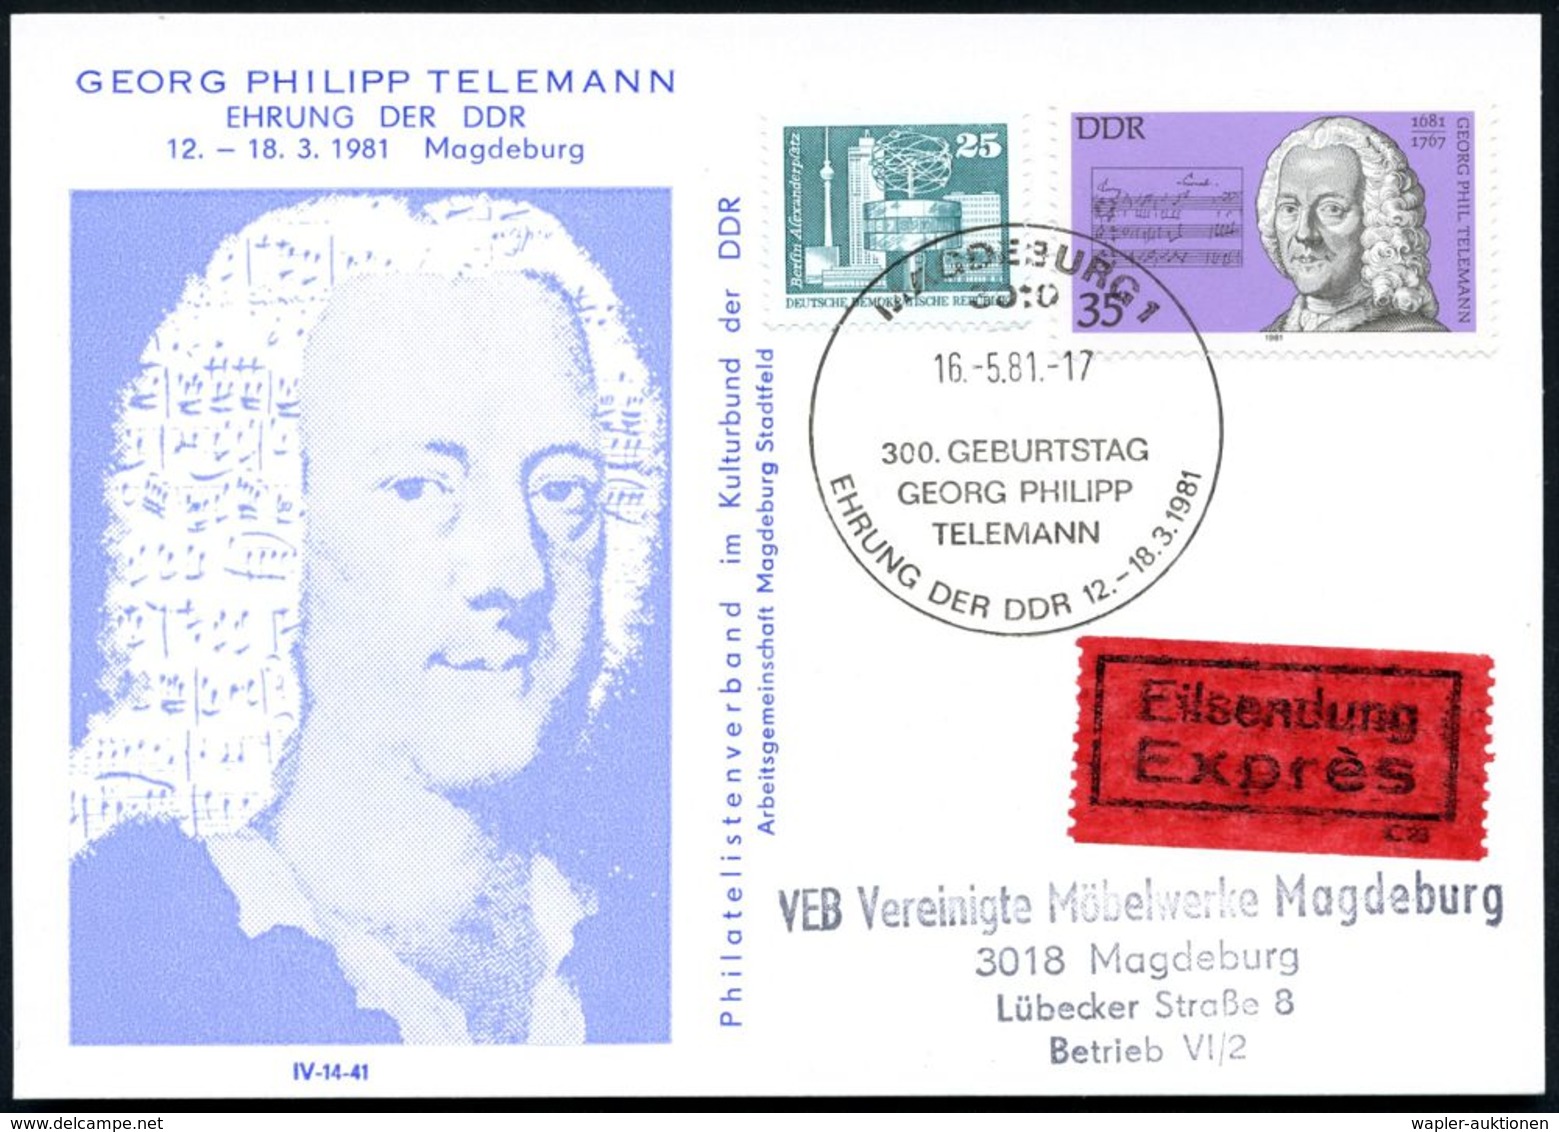 3010 MAGDEBURG1/ 300.GEBURTSTAG/ GEORG PH./ TELEMANN 1981 (21.5.) SSt Auf 35 Pf. G. Ph. Telemann = Zeitgenosse Händels U - Muziek